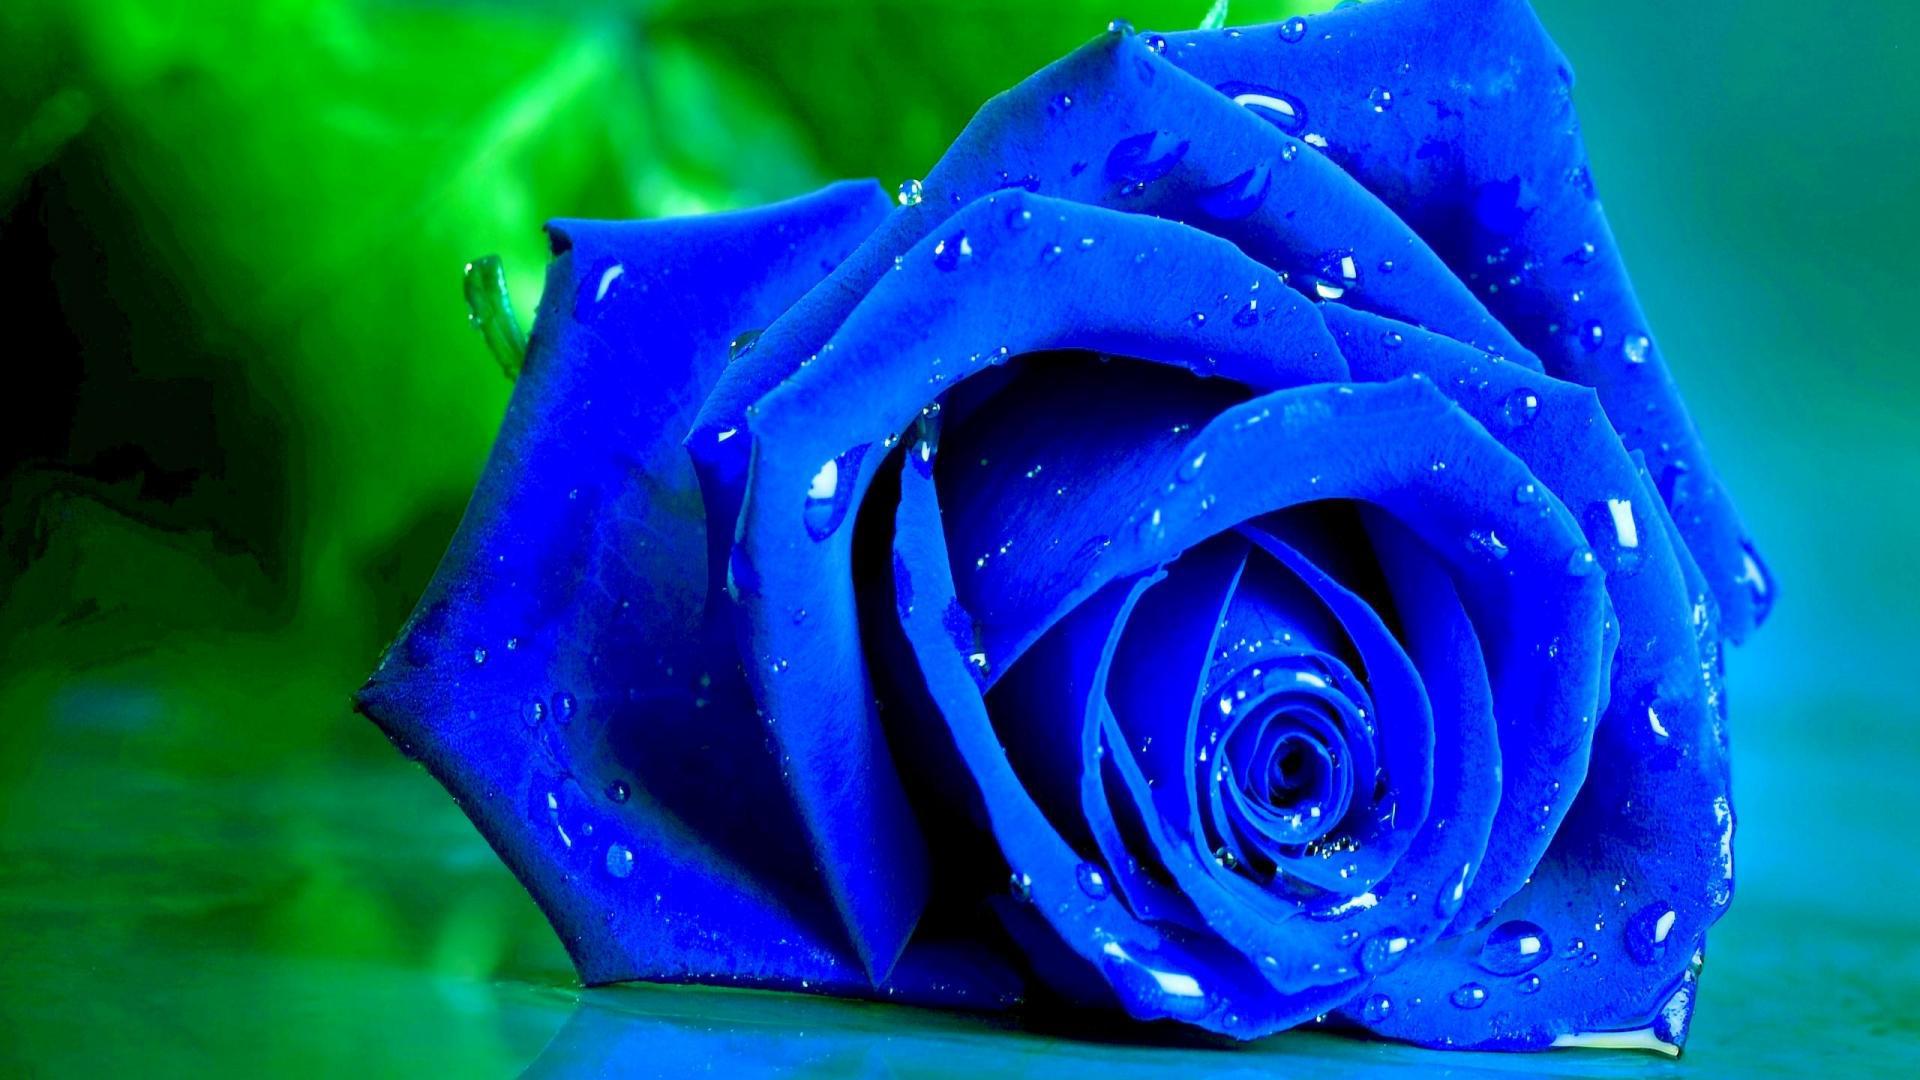 Blue Rose Flowers Nature Background Wallpaper On Desktop